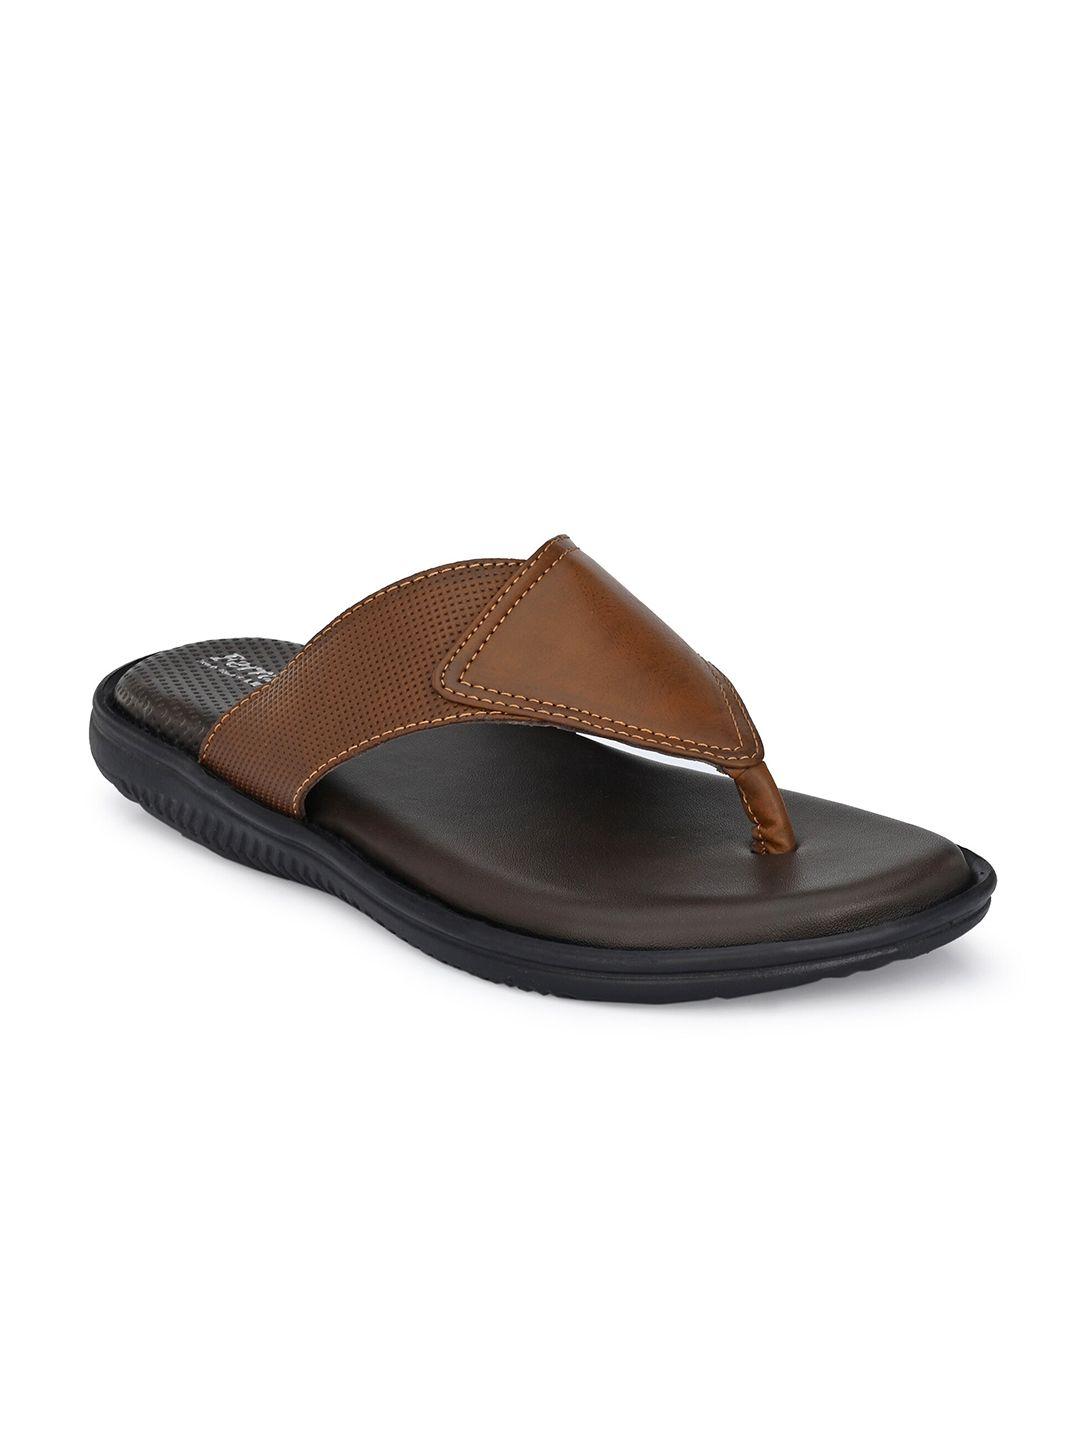 birgos-men-tan-&-black-comfort-sandals